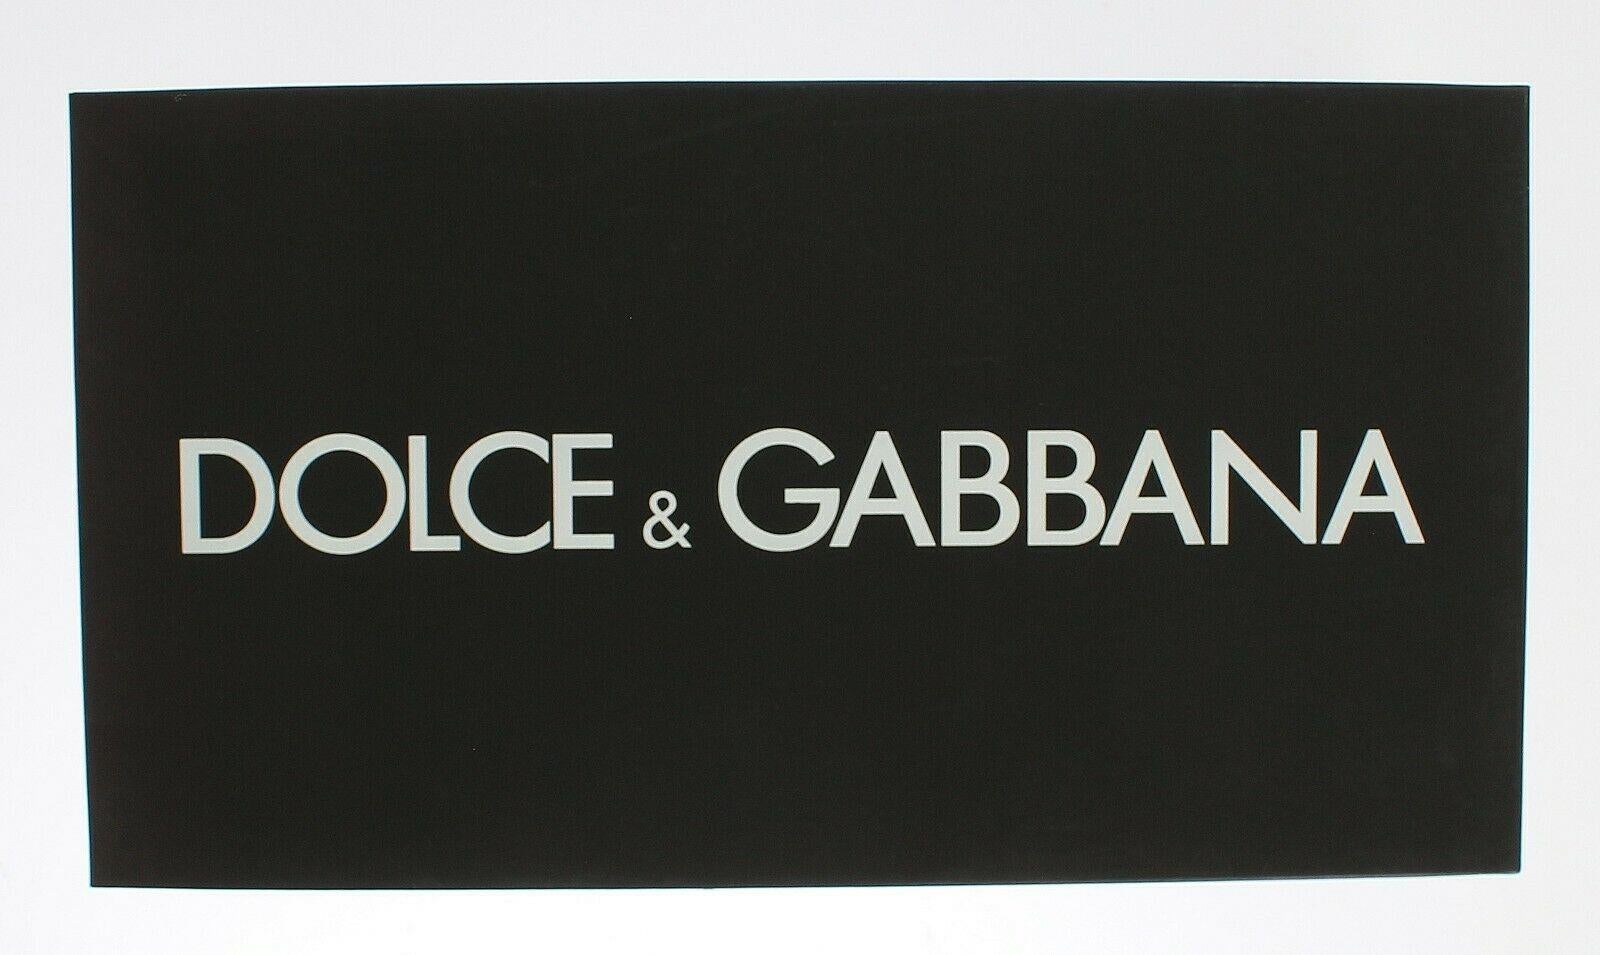 Dolce & Gabbana Black Red Leather Sling Back Shoes Heels Pumps Amore DG Logo 4